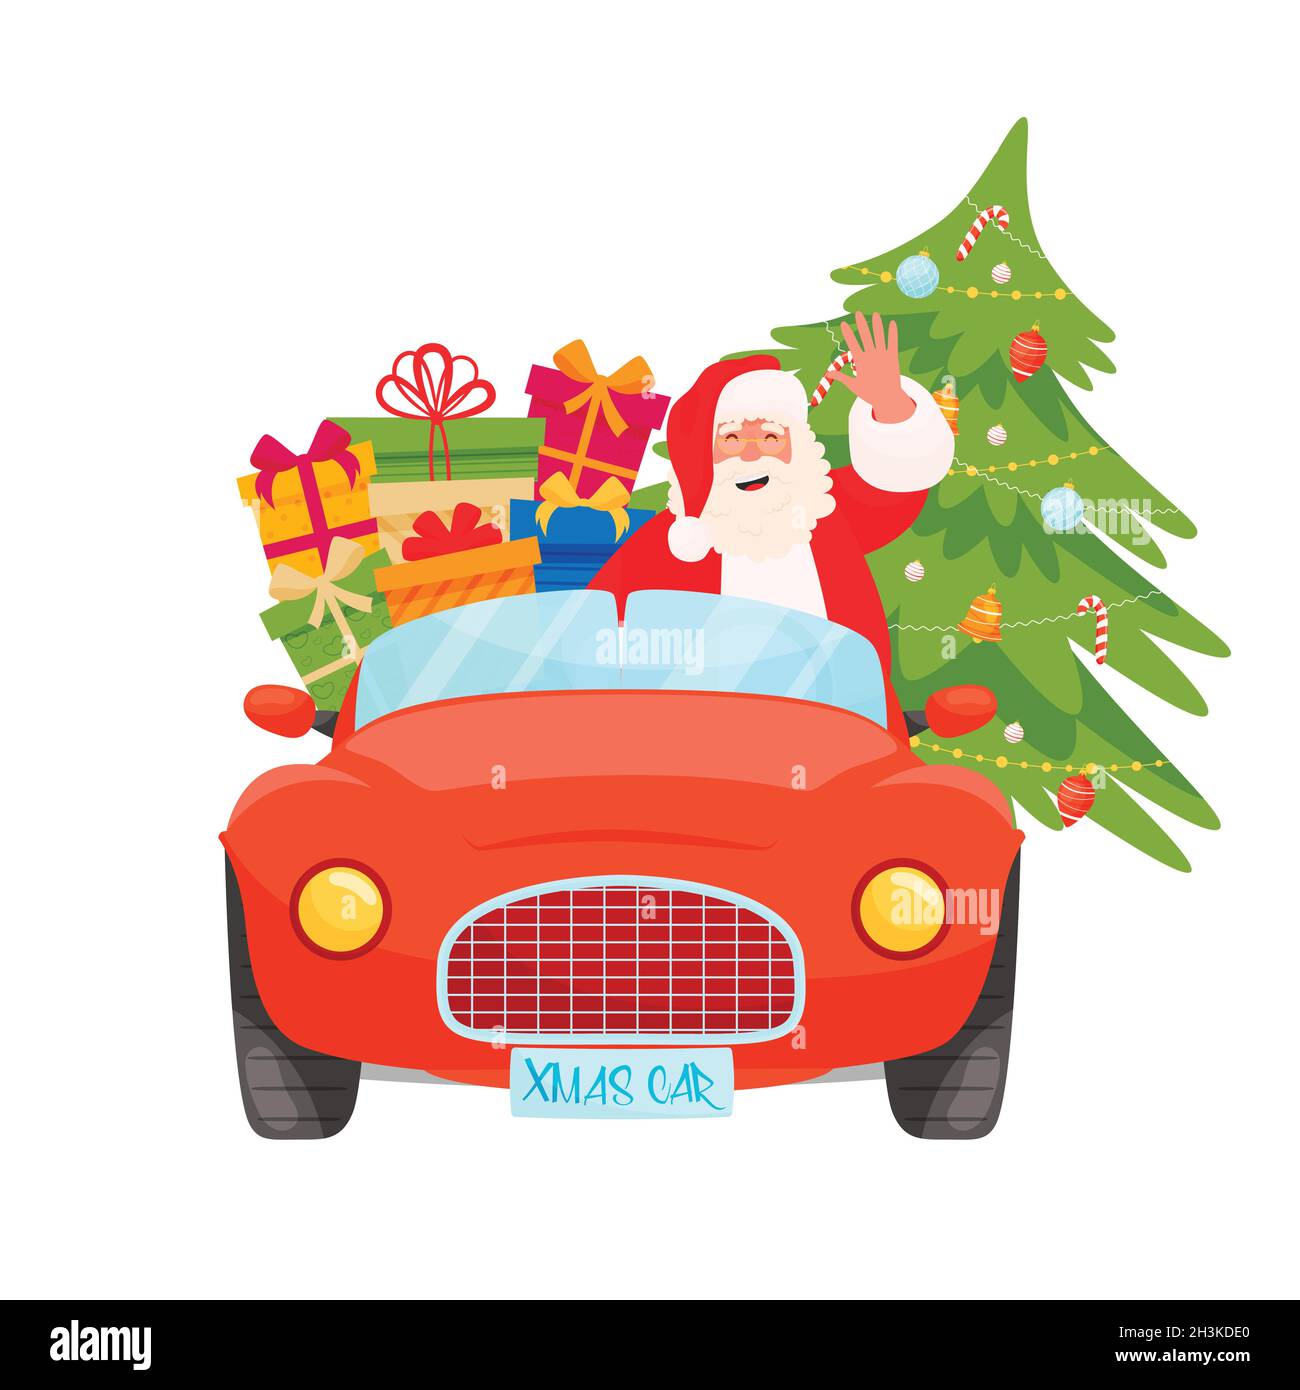 Santa fahren Weihnachten rotes Auto mit Weihnachtskiefer und Geschenke  Stock-Vektorgrafik - Alamy